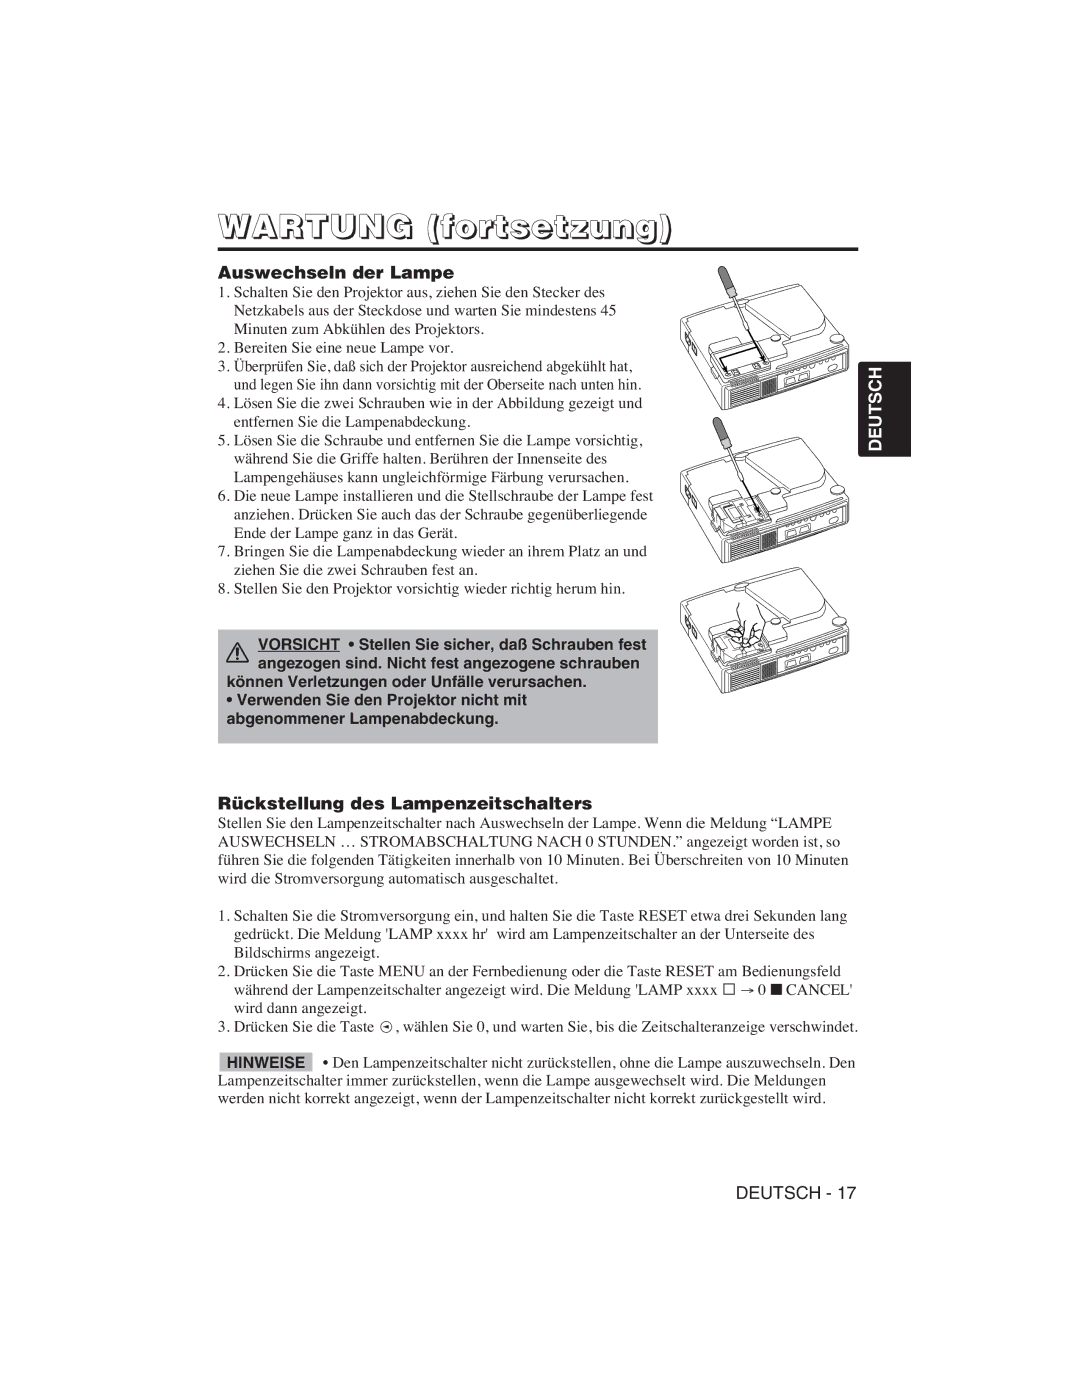 Hitachi CP-S225W, CP-X275W user manual Wartung fortsetzung, Auswechseln der Lampe, Rückstellung des Lampenzeitschalters 